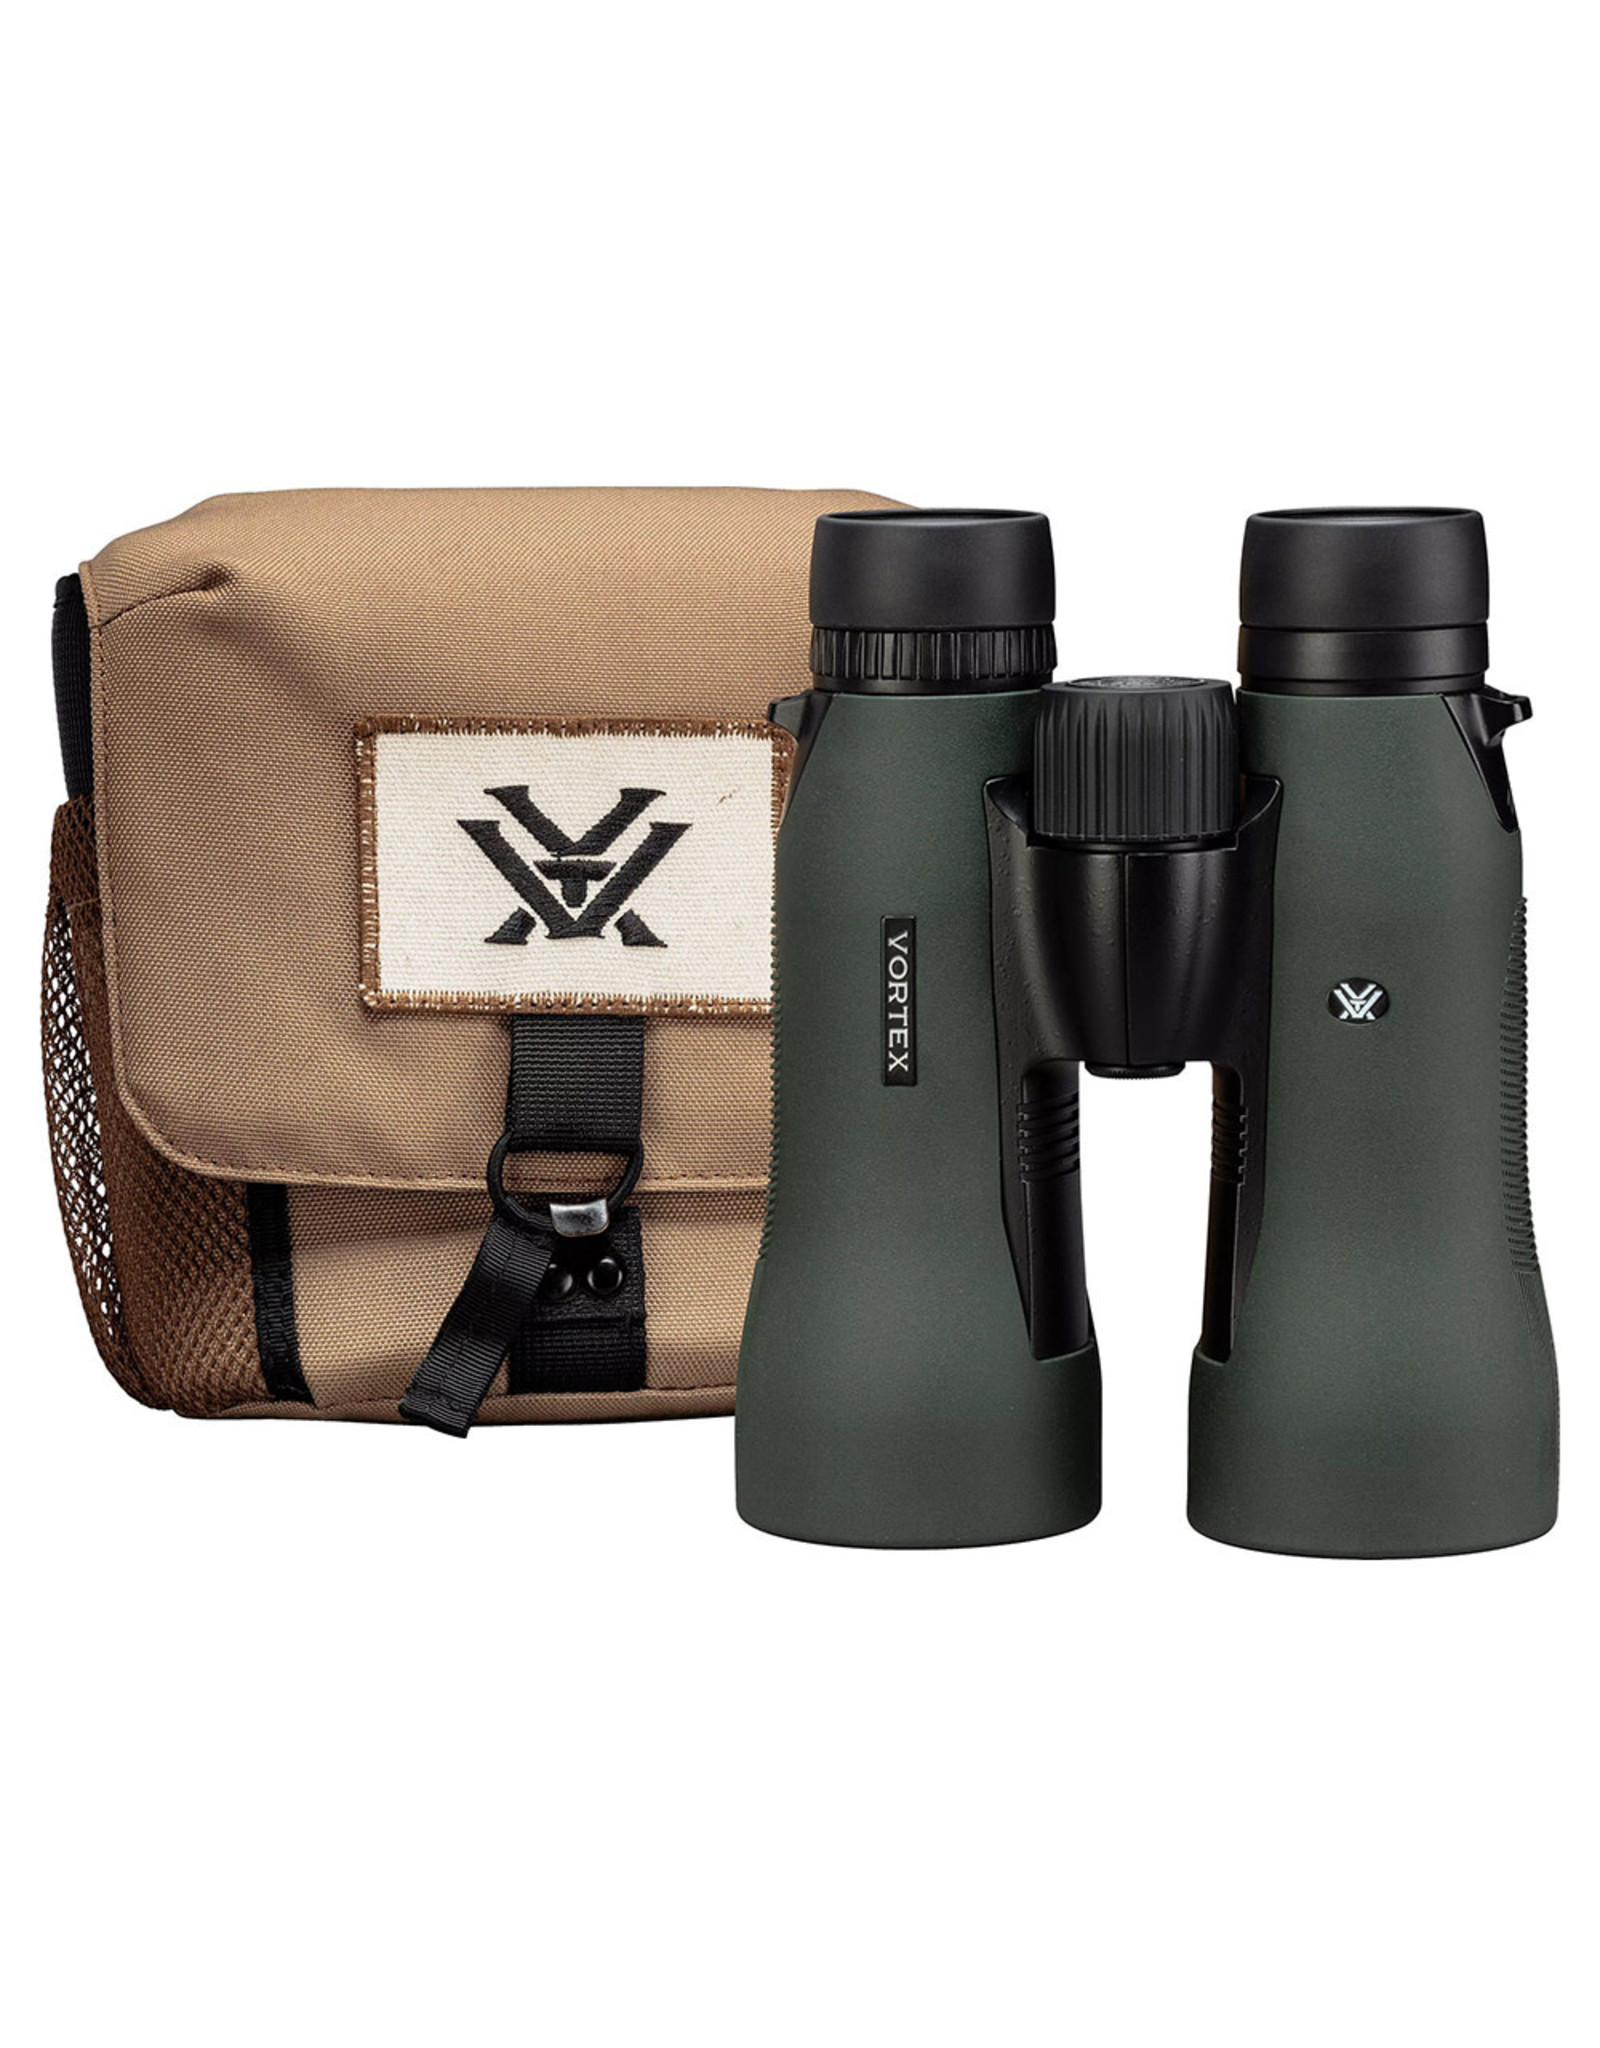 Vortex Vortex Diamondback HD 15x56 Binoculars DB-218